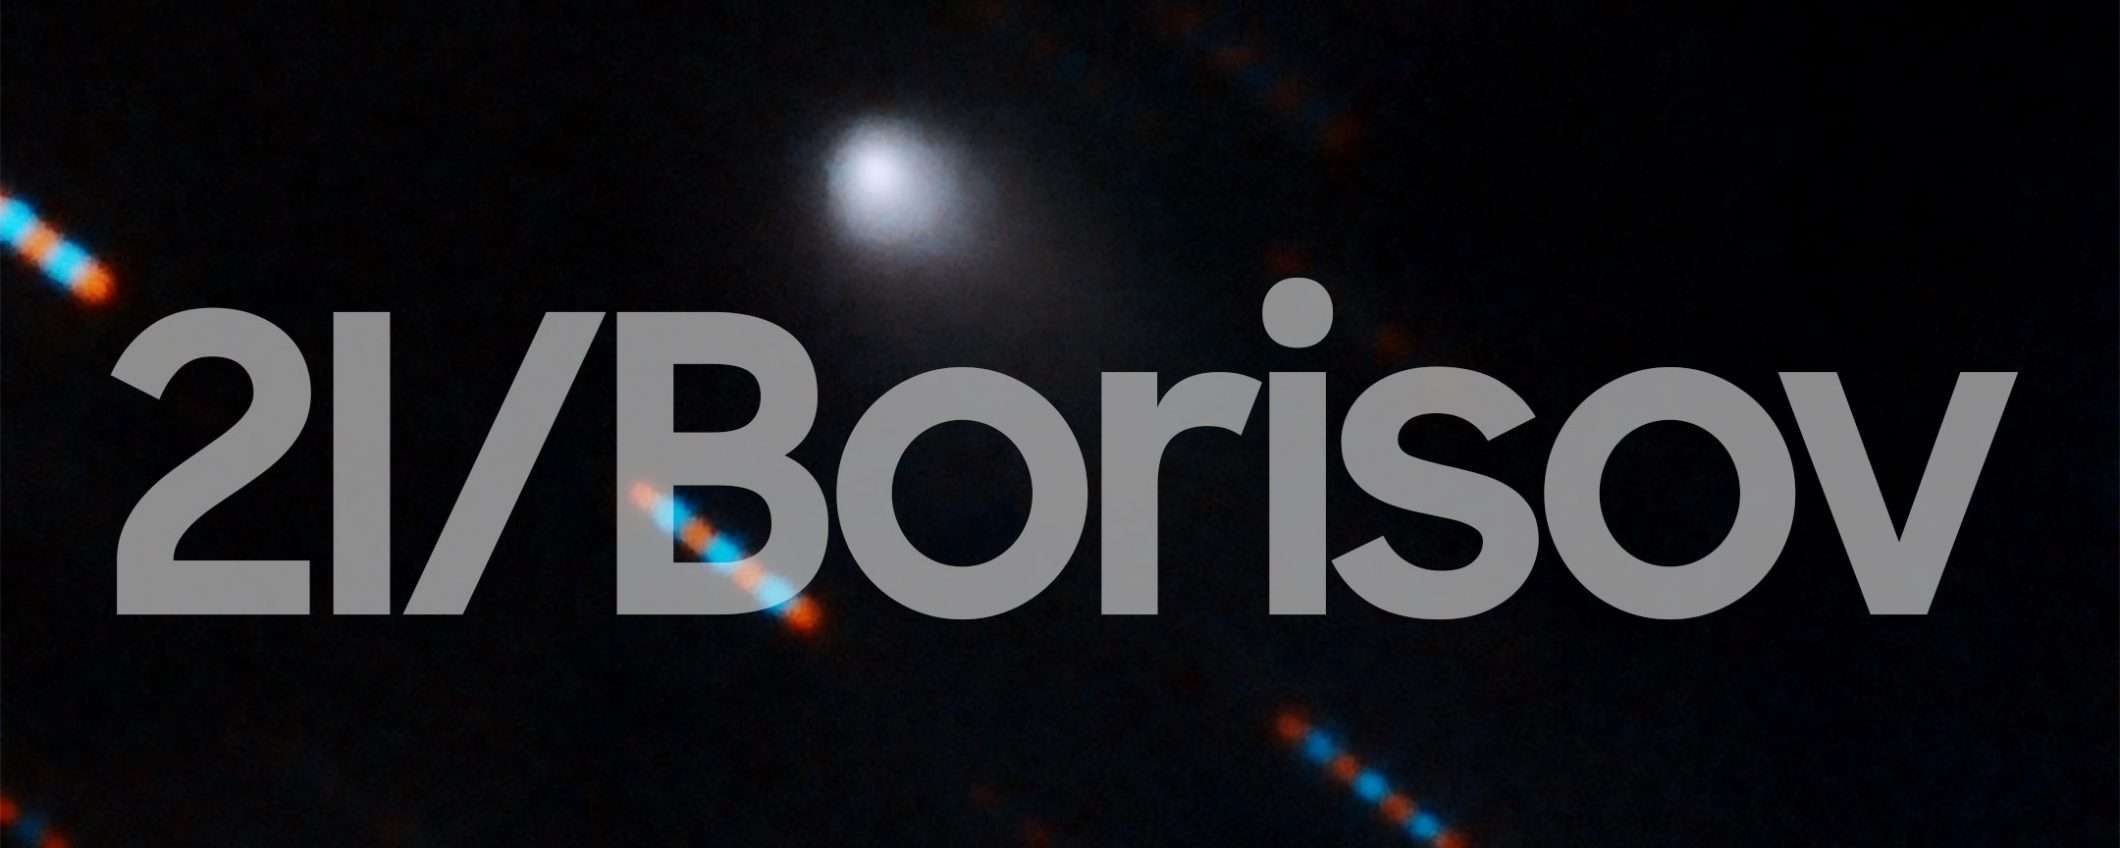 Avvistato l'oggetto interstellare 2I/Borisov